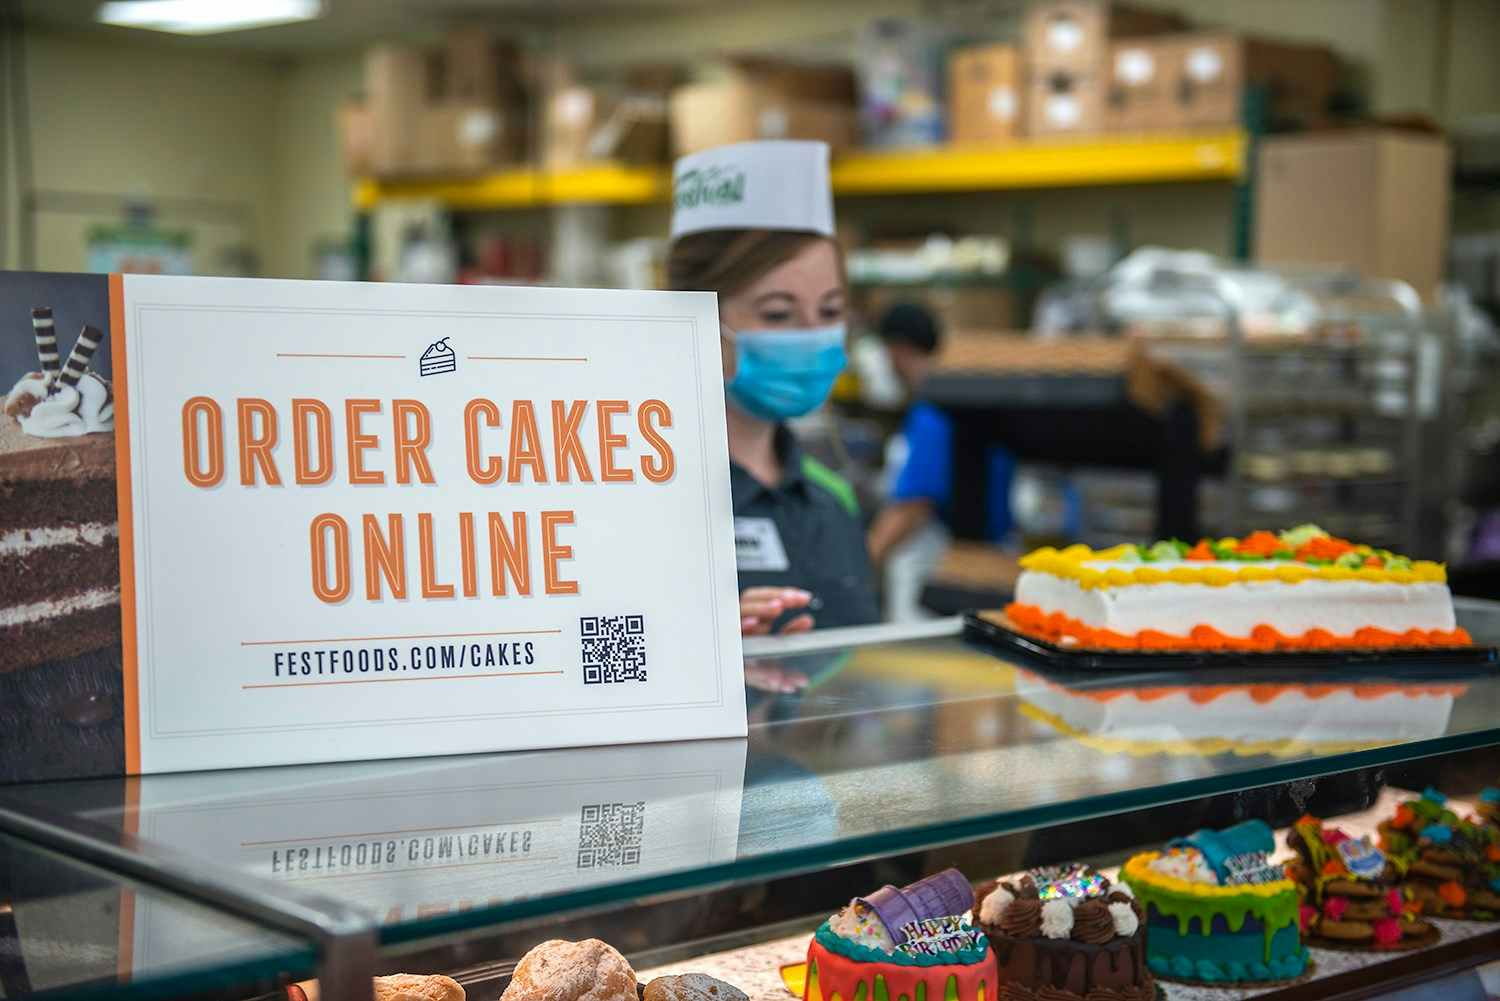 Order online sign at Festival Foods